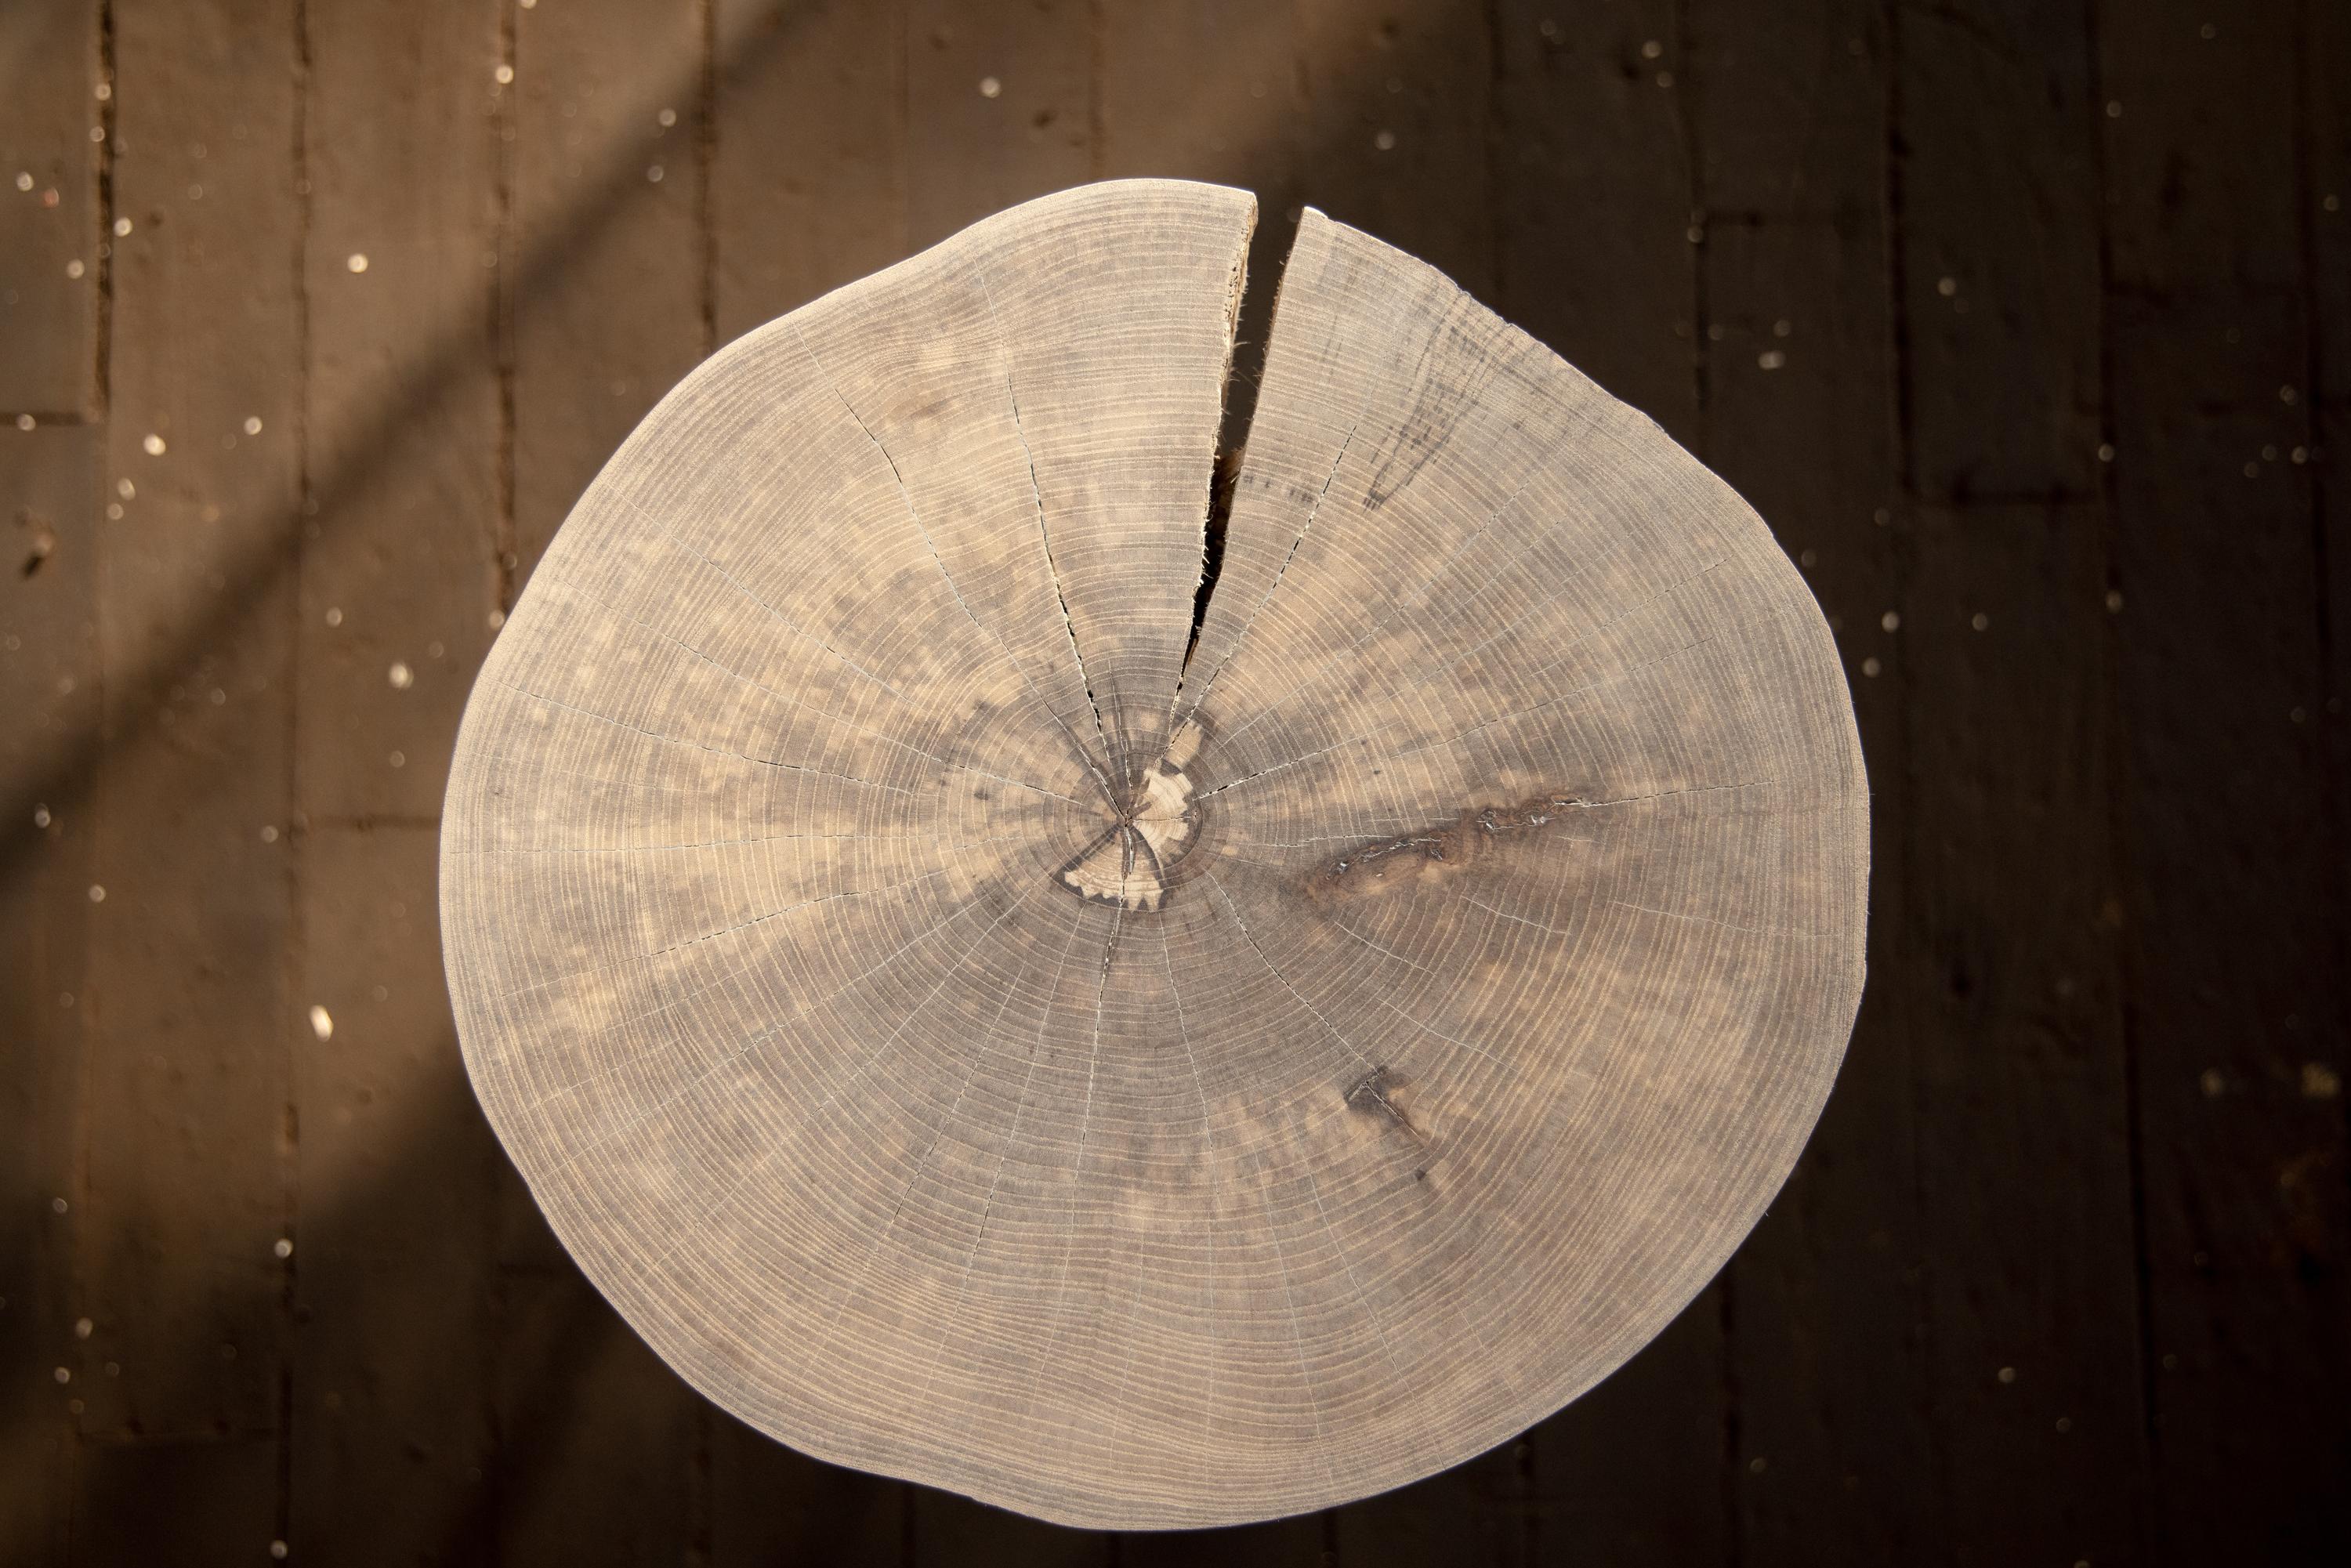 Unsere Fossil-Tische sind eine kuratierte Mischung aus einer modernen, organischen, runden Tischplatte mit lebendiger Kante und handgedrechselten Beinen im Stil der Jahrhundertmitte. Wir wählen aus unserer Sammlung von städtischen Holzschätzen genau